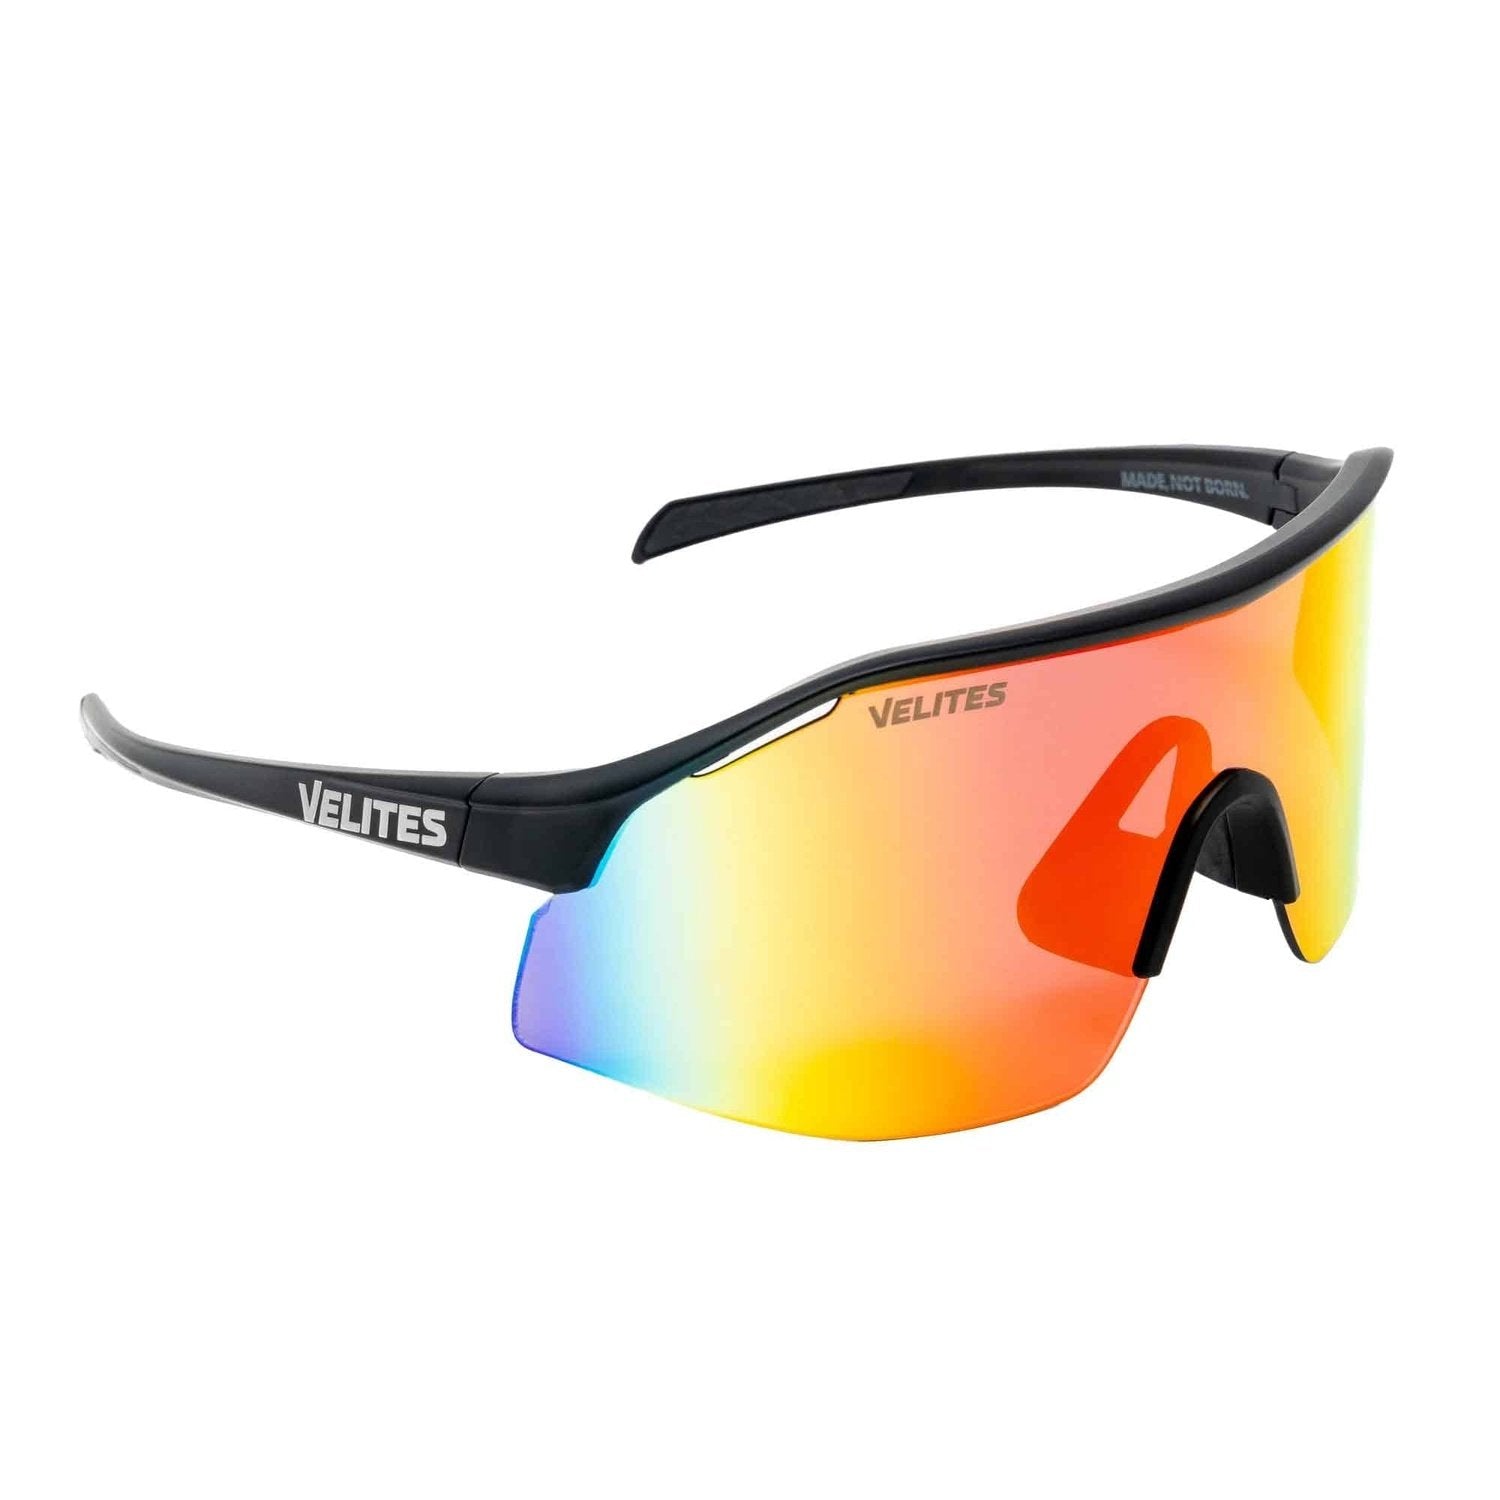 Velites Sonnenbrille "Raptor Sport" Schwarz/Orange kaufen bei HighPowered.ch